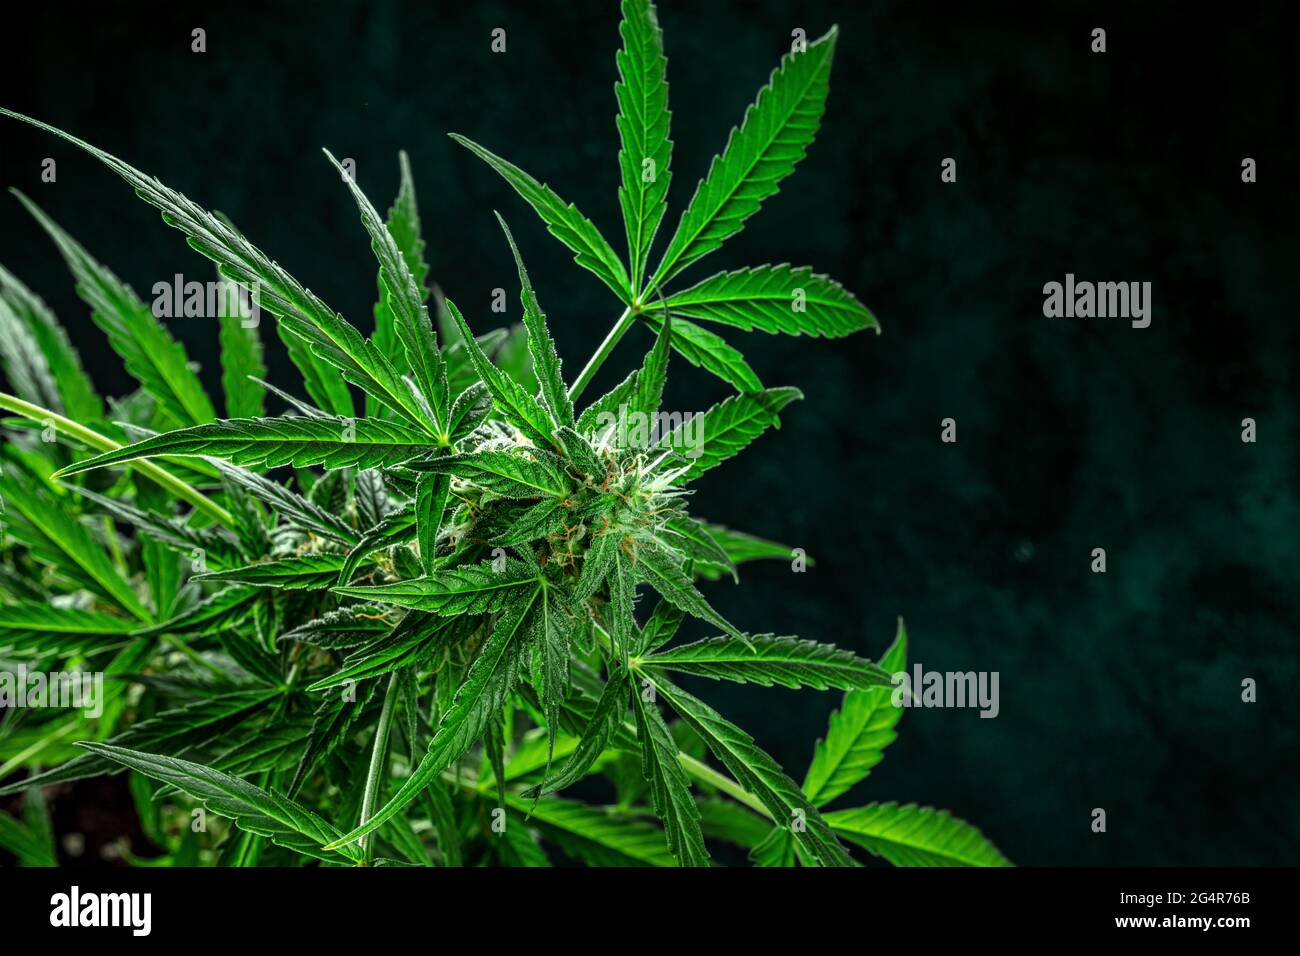 Planta de marihuana, casi lista para la cosecha, sobre un fondo oscuro con un lugar para el texto. Flores de cannabis con estigmas amarillos y hojas verdes Foto de stock